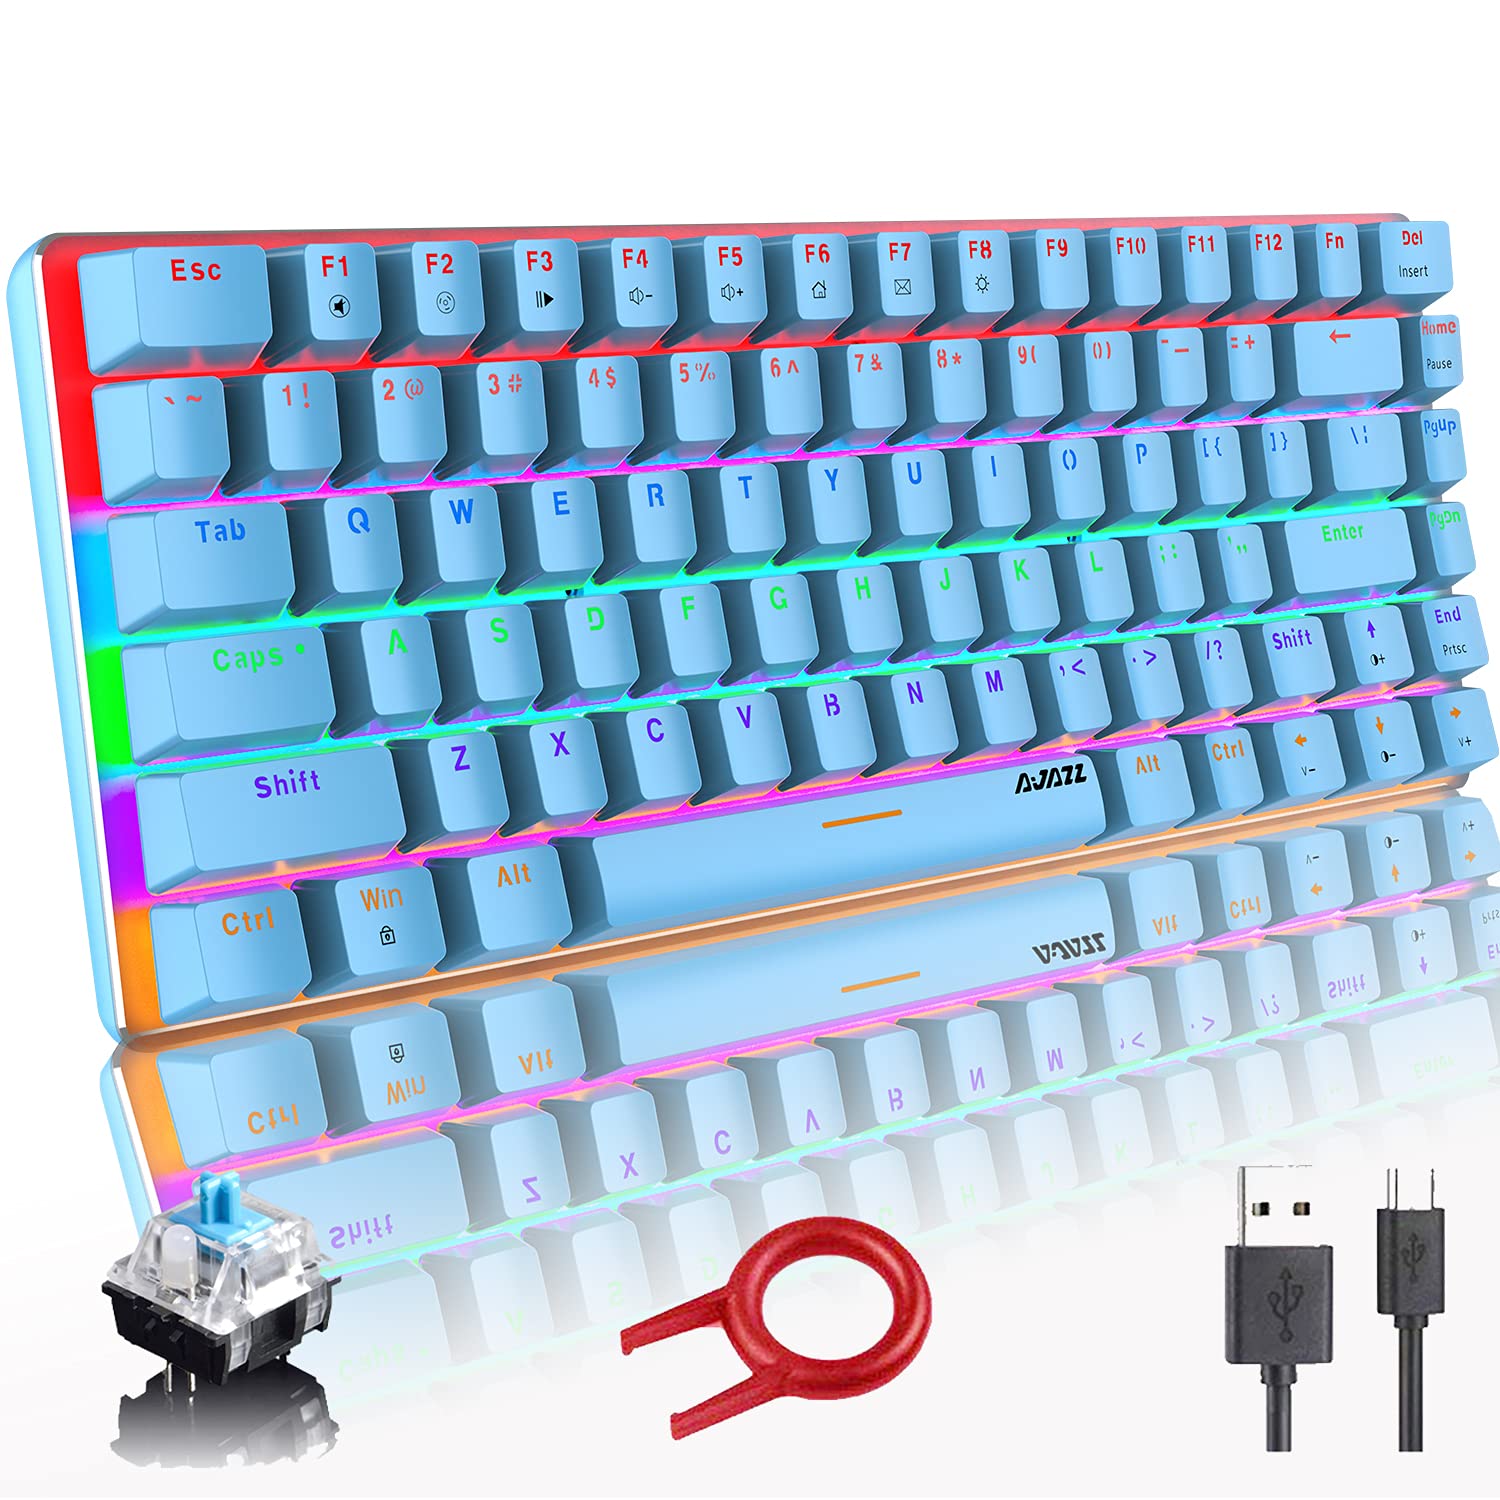 Hoopond Mechanische Tastatur,AK33 Regenbogen-LED-Hintergrundbeleuchtung, USB-Kabel, Gaming-Tastatur,82 Tasten, kompakte mechanische Gaming-Tastatur mit Anti-Ghosting-Tasten für Gamer und Schreibkräfte